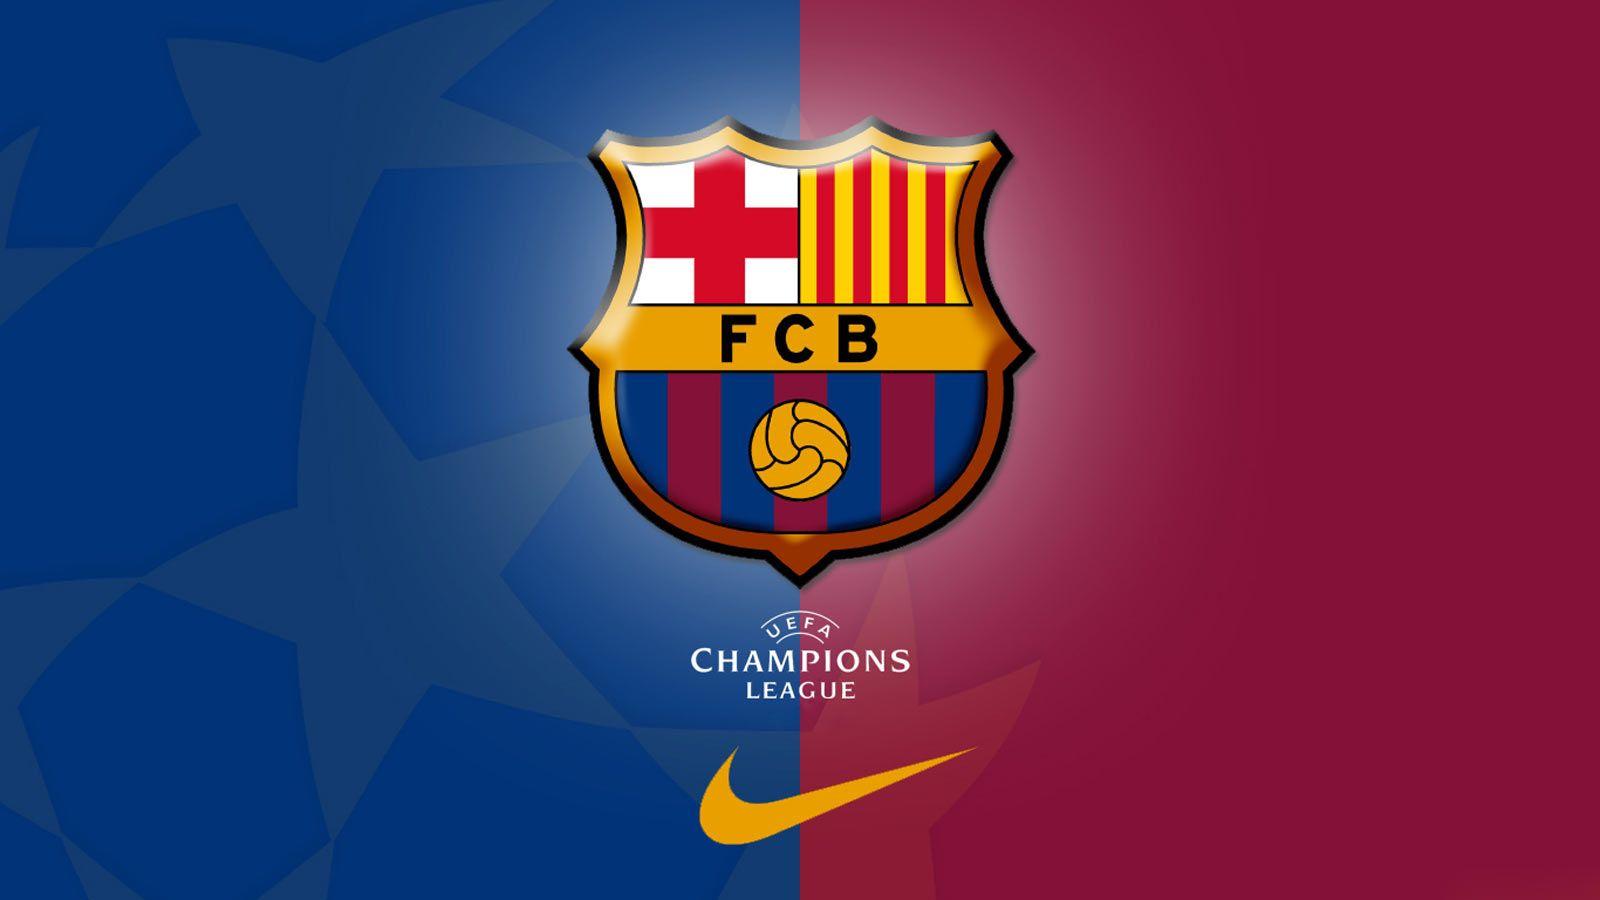 FCB Logo - FC Barcelona Logo Wallpapers - Wallpaper Cave